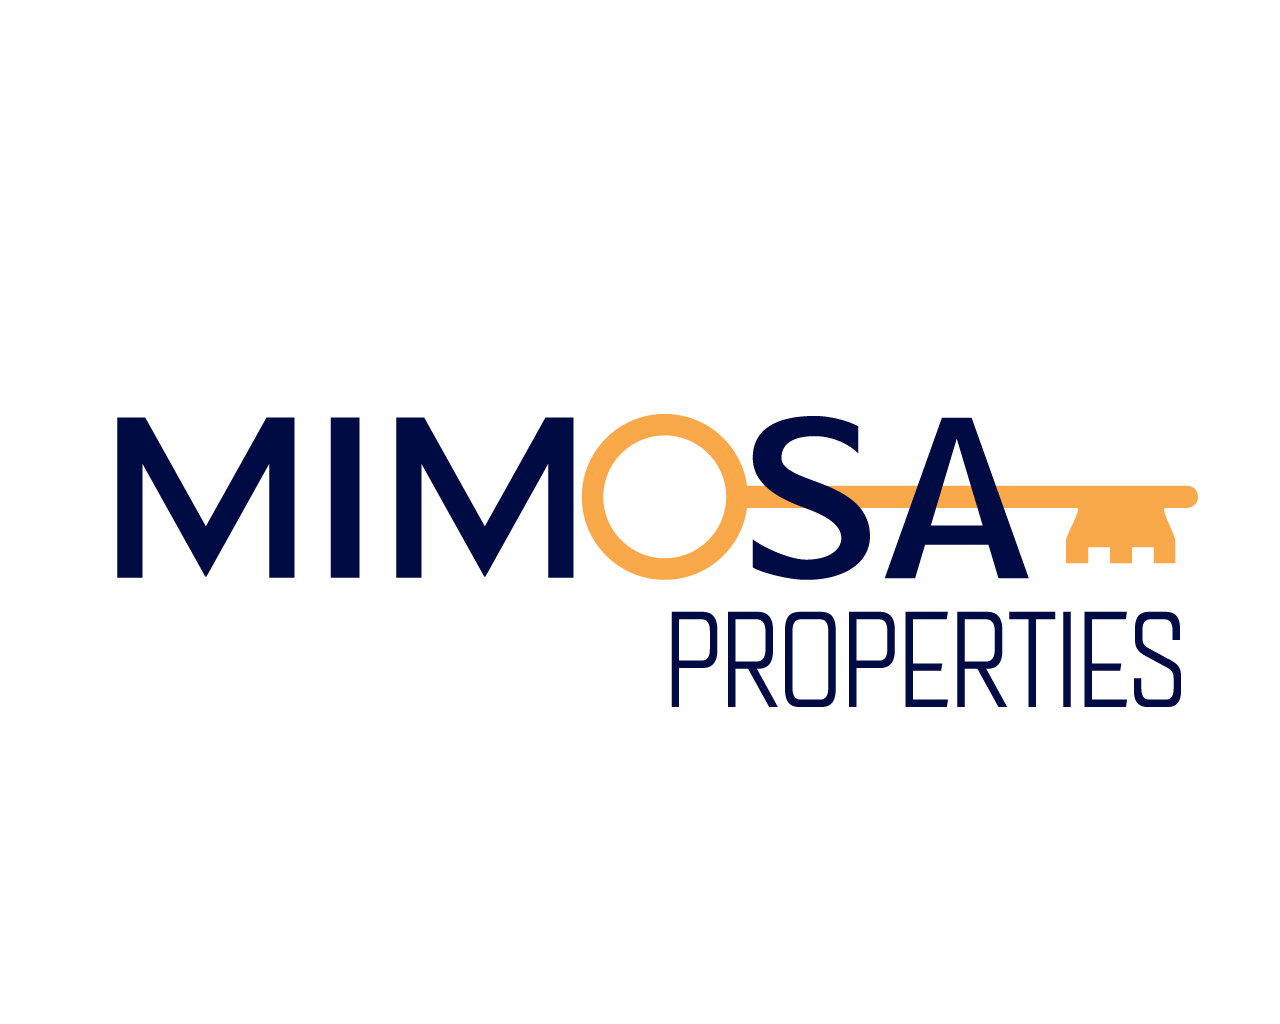 Mimosaproperties - Imobiliára / Real Estate / Makelaars